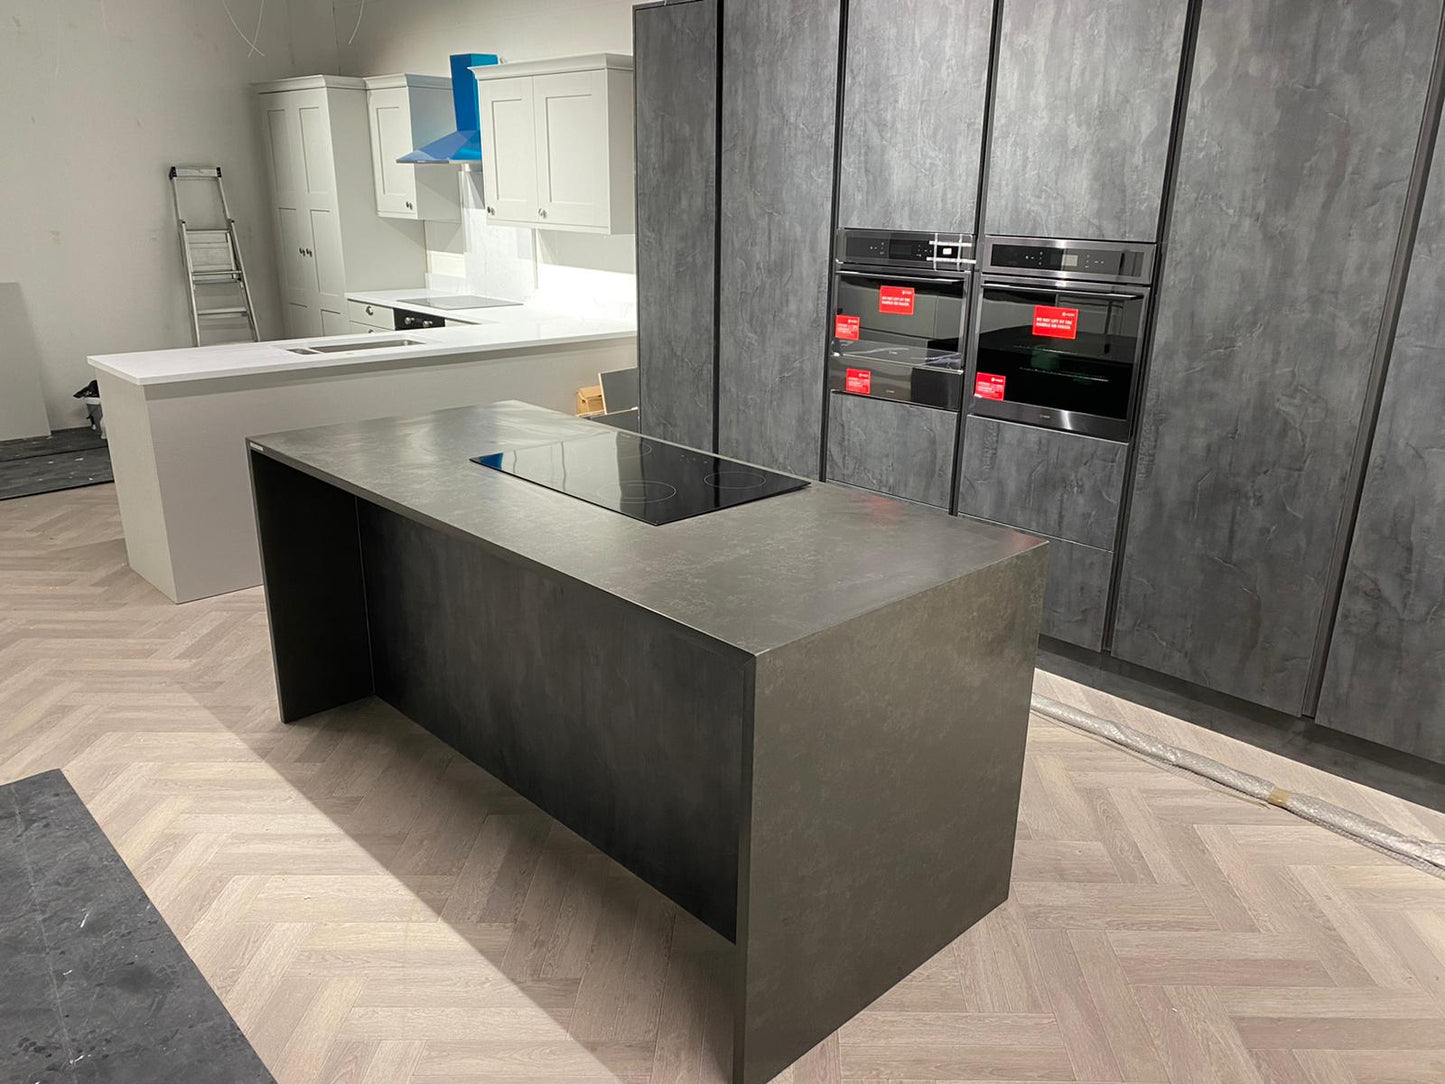 Unistone Tartufo dark grey quartz kitchen worktops